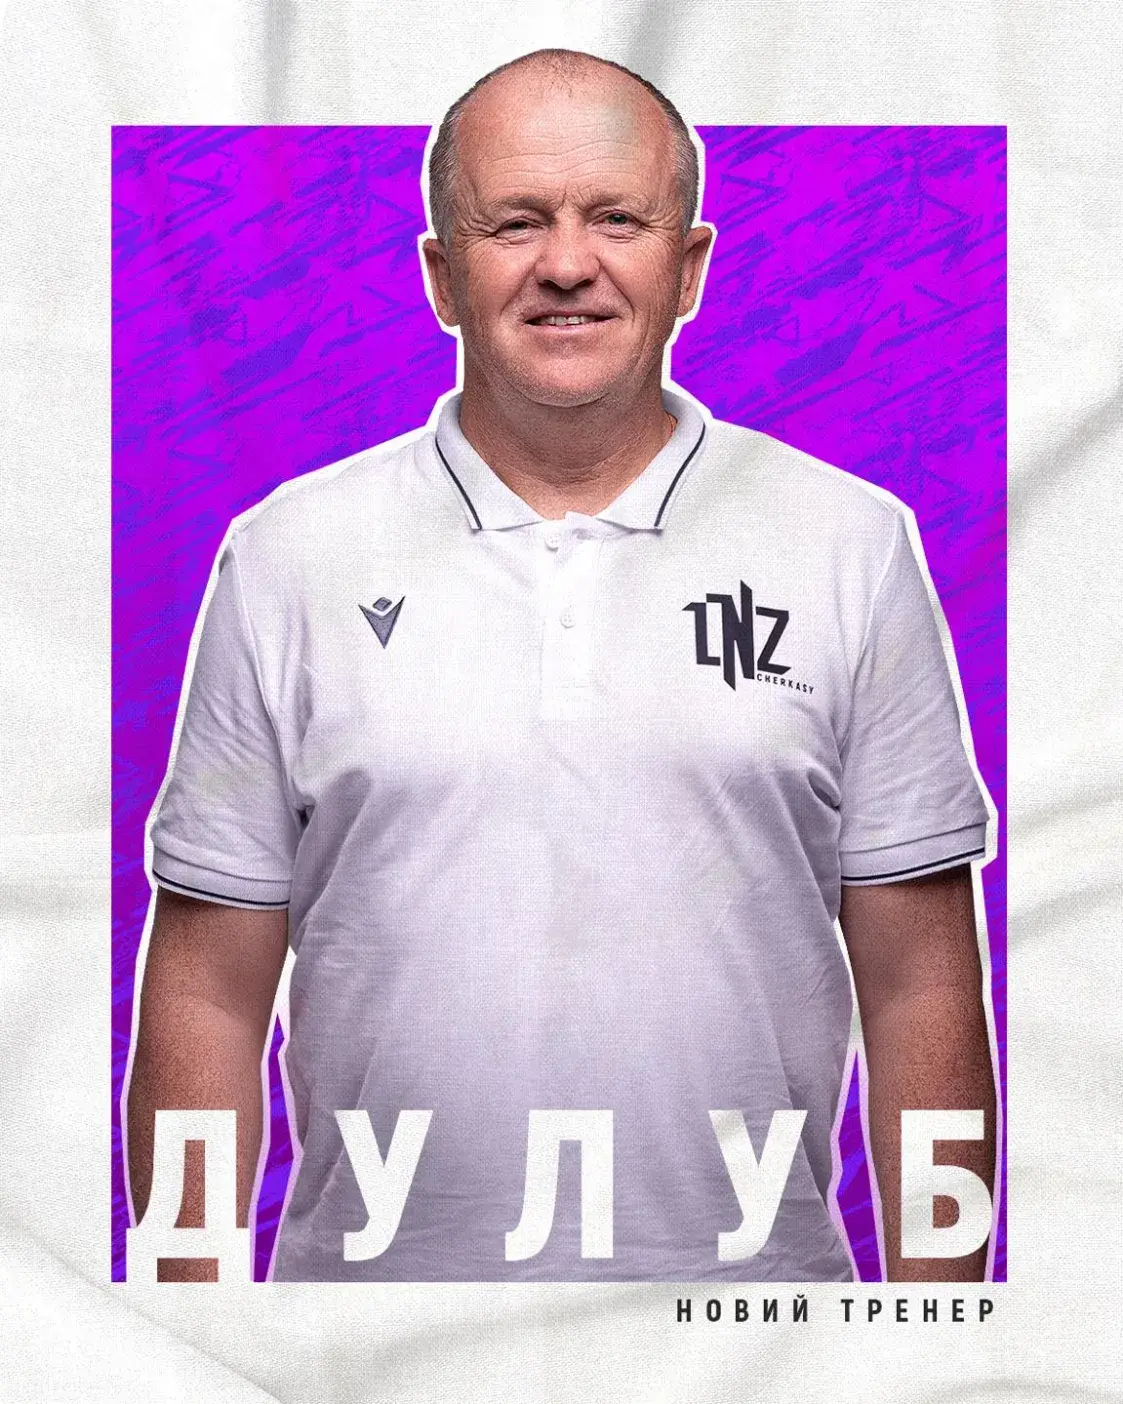 Алег Дулуб стаў галоўным трэнерам украінскага футбольнага клуба з Чаркасаў